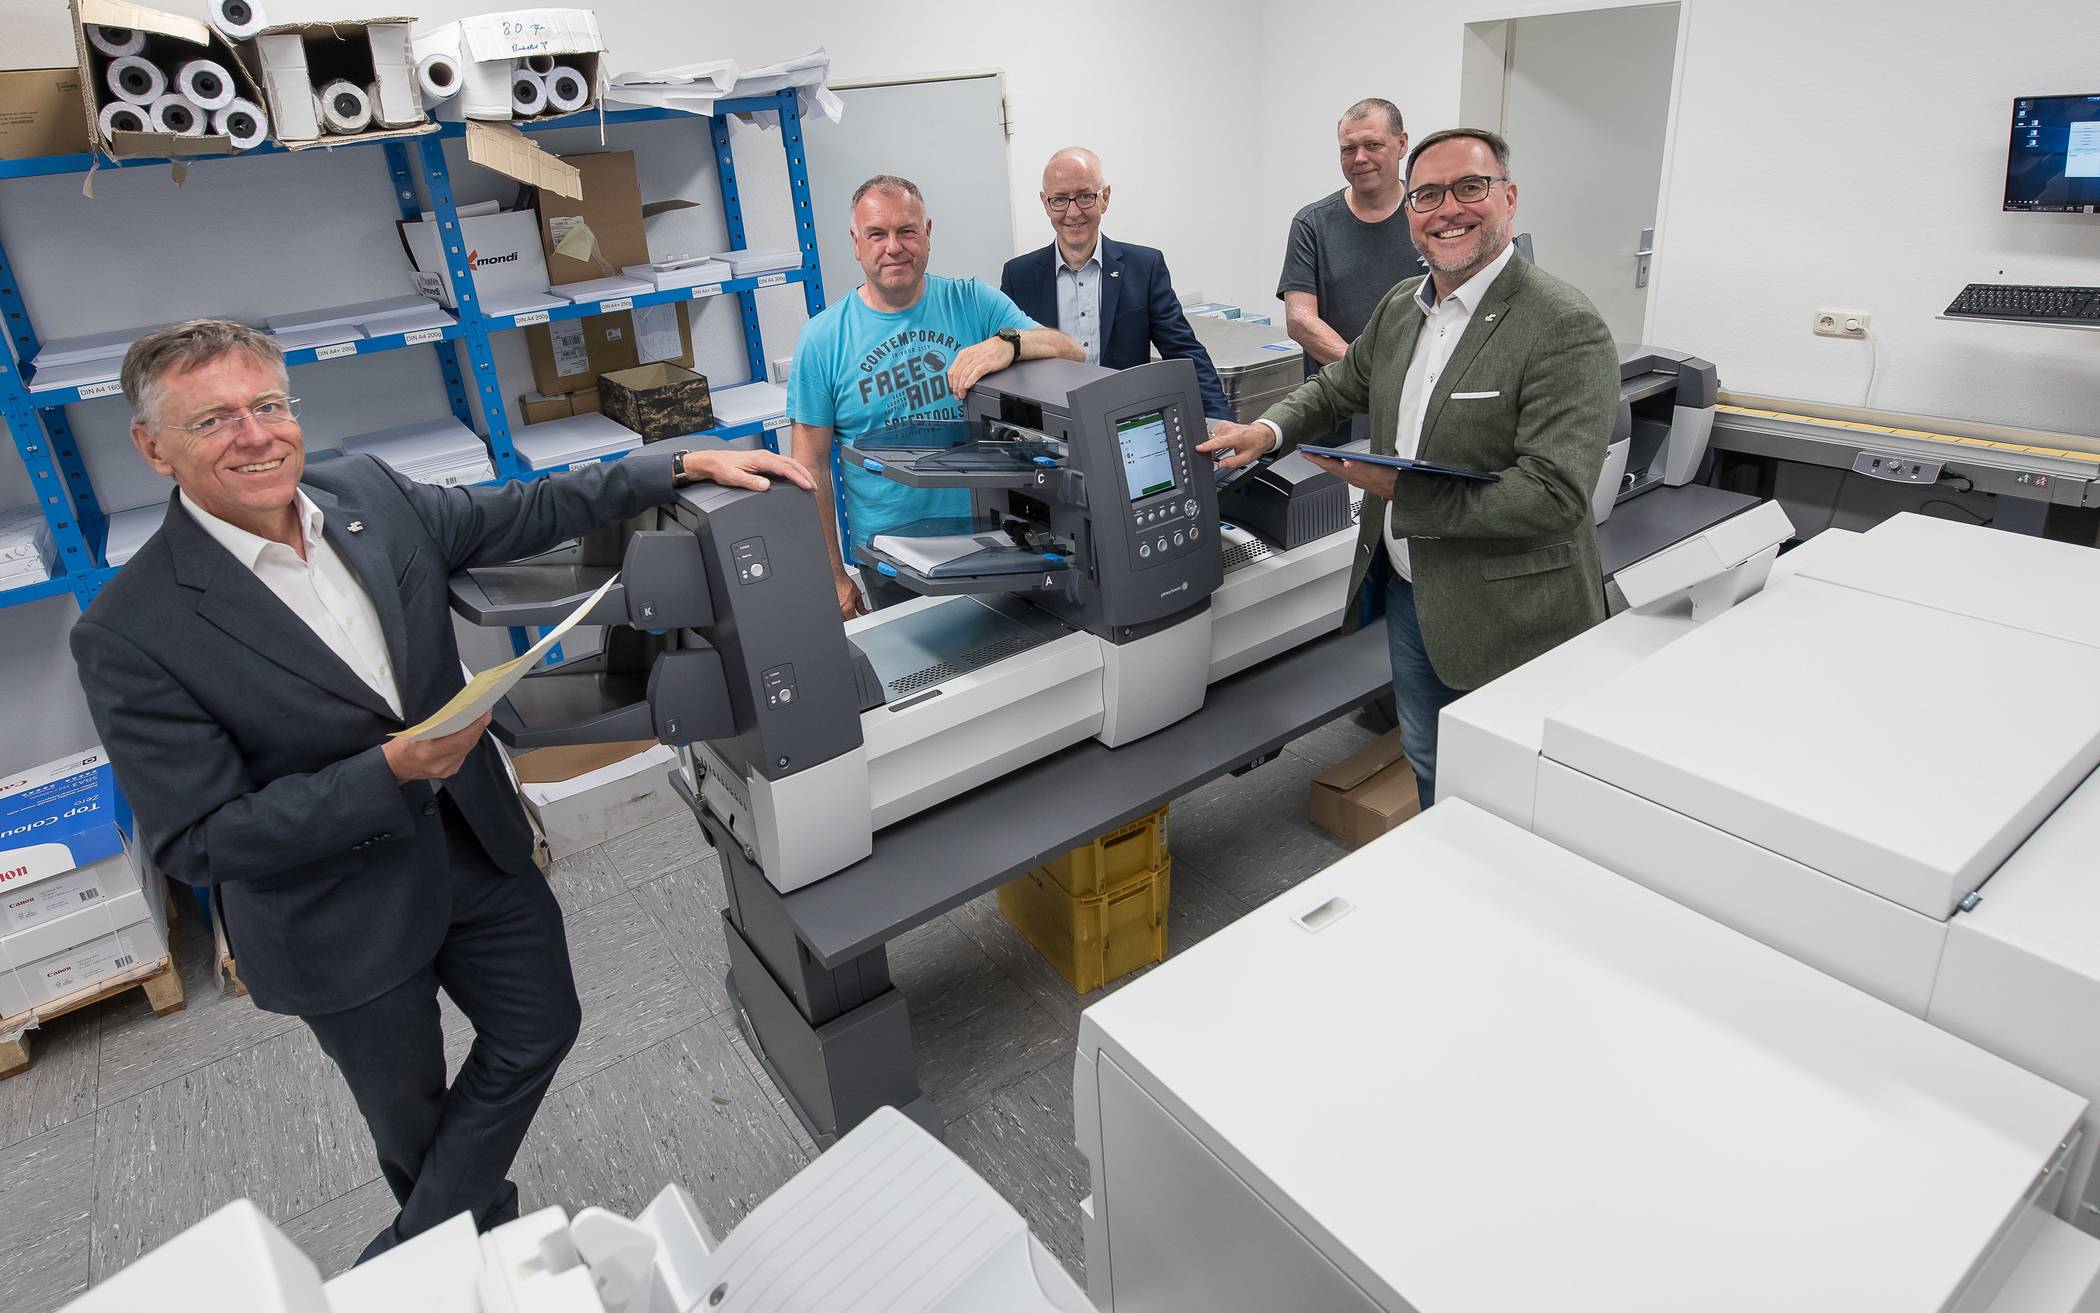  Von links: Landrat Hans-Jürgen Petrauschke, Wolfgang Groß, Frank Meger, Bernd Schirrmann und IT-Dezernent Harald Vieten in der Hausdruckerei, die die digitale Bußgeldstelle unterstützt. 